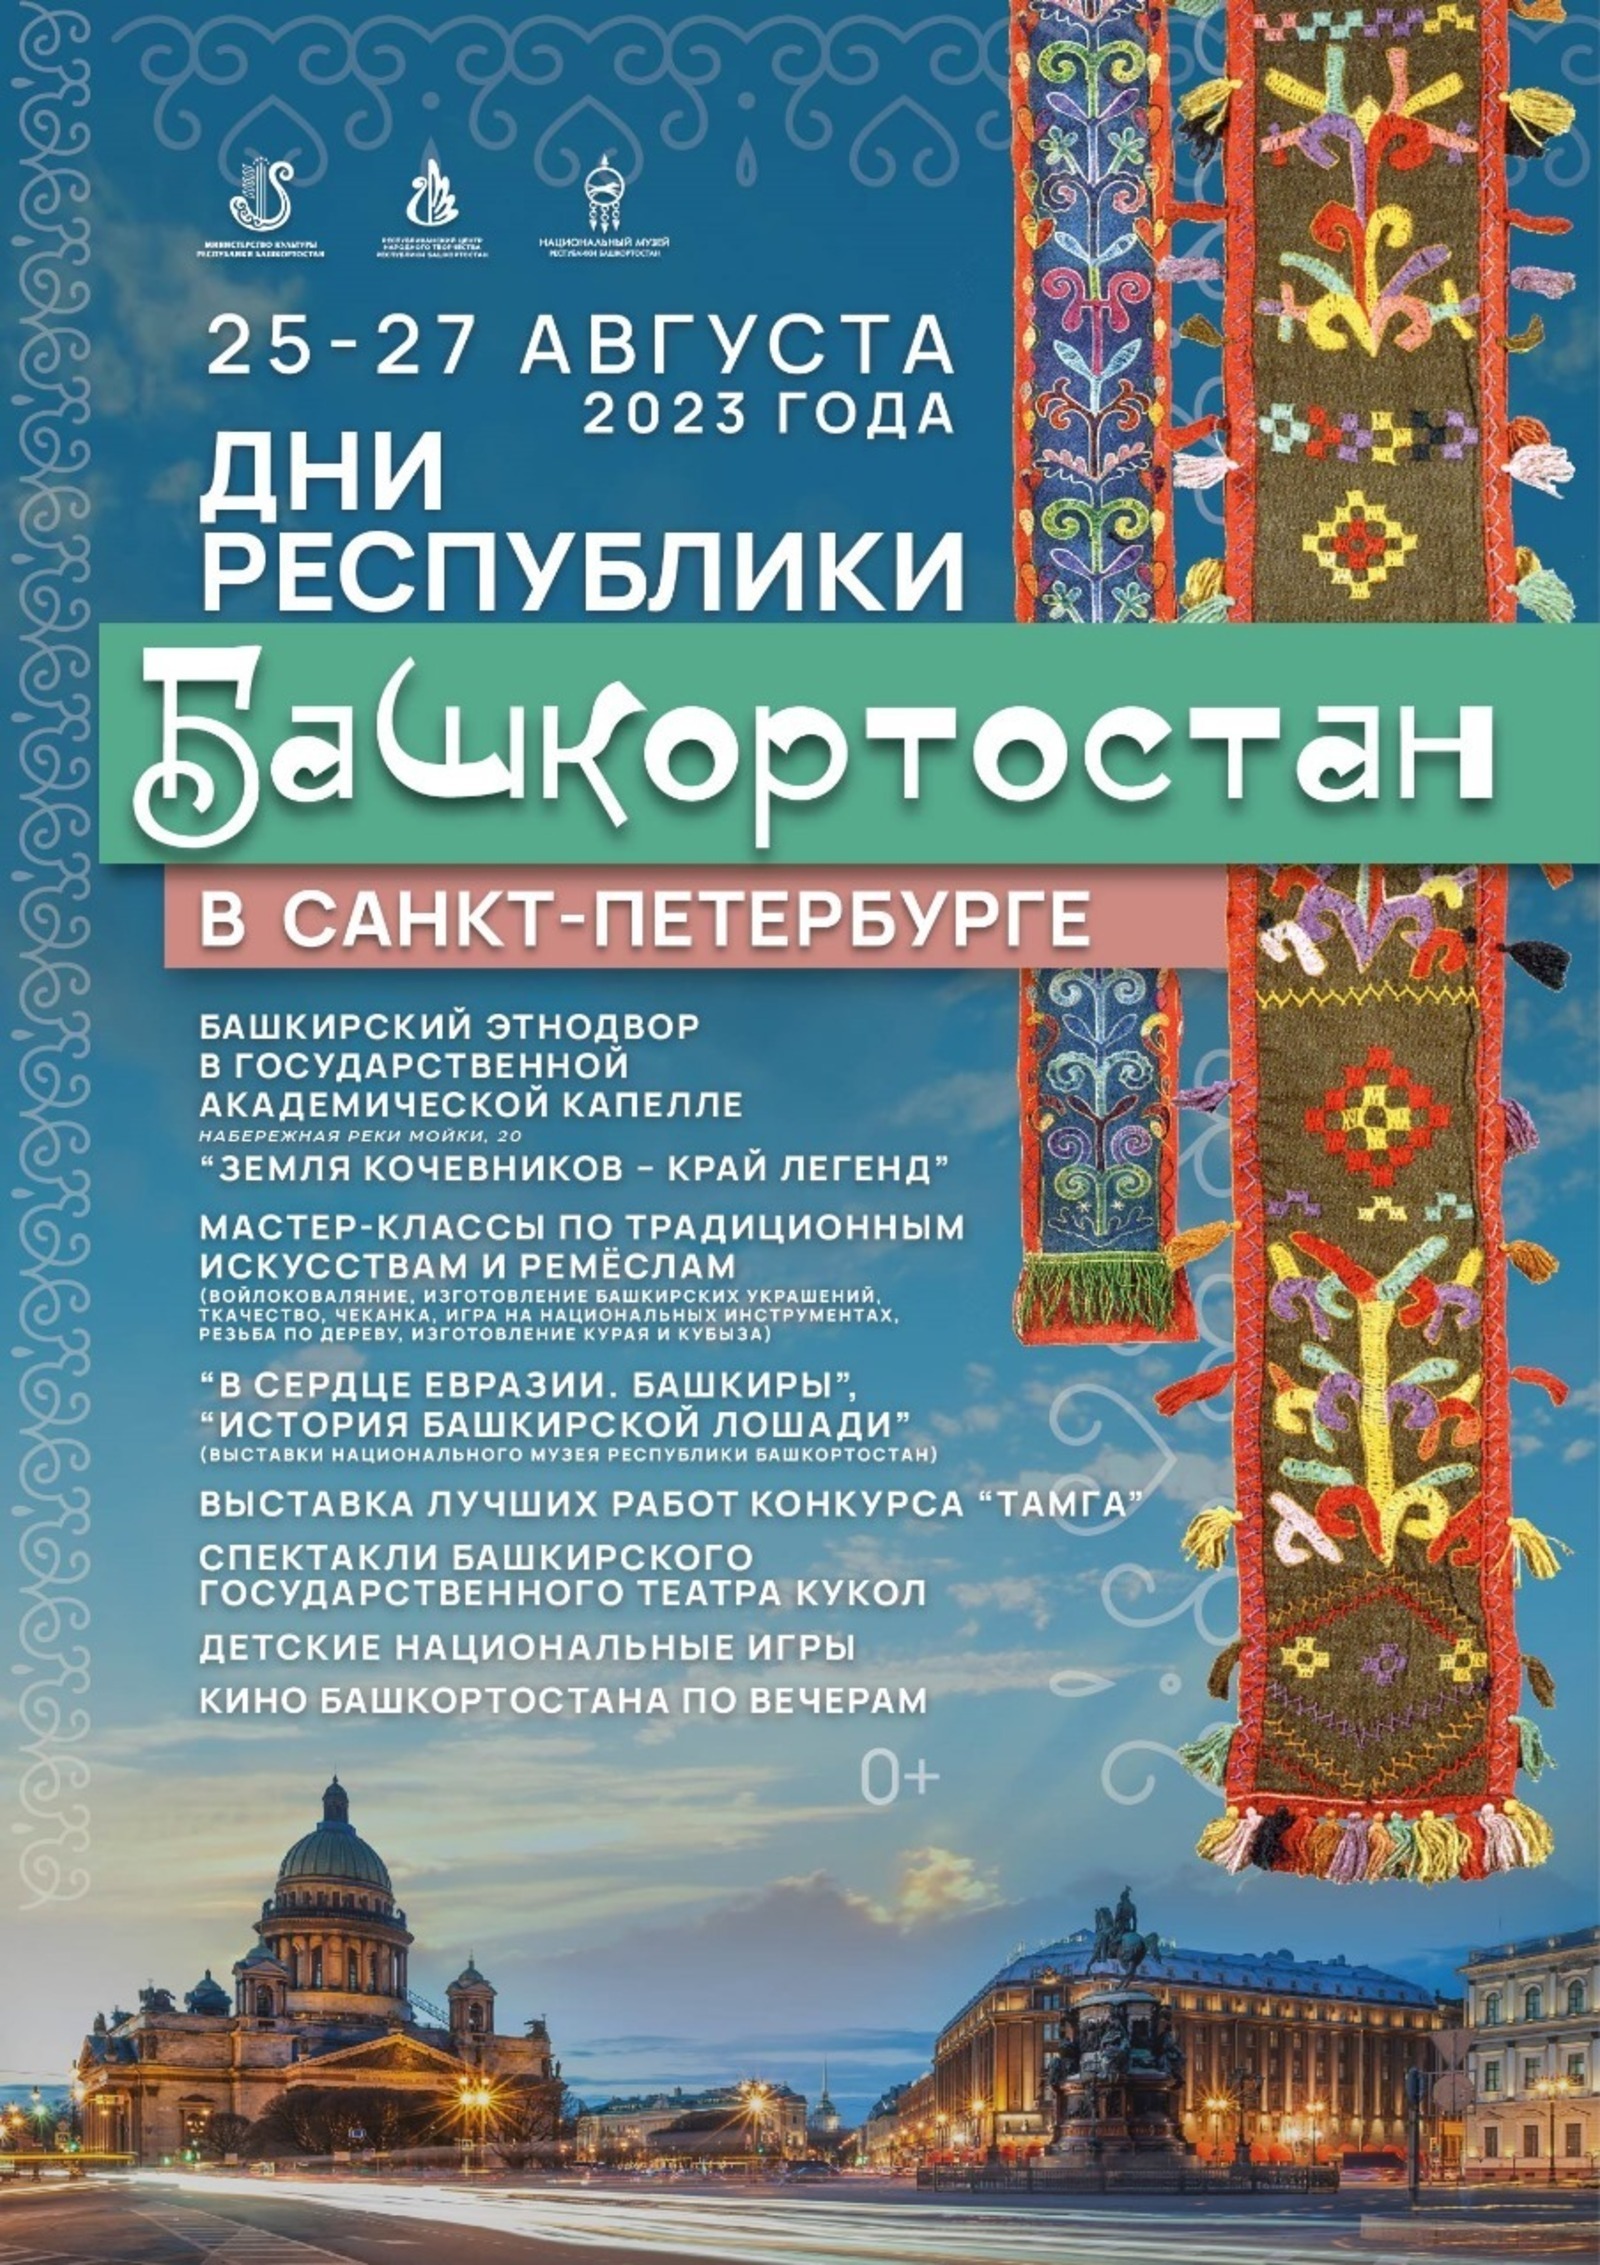 В Санкт-Петербурге в Дни Республики развернётся башкирский этнодвор